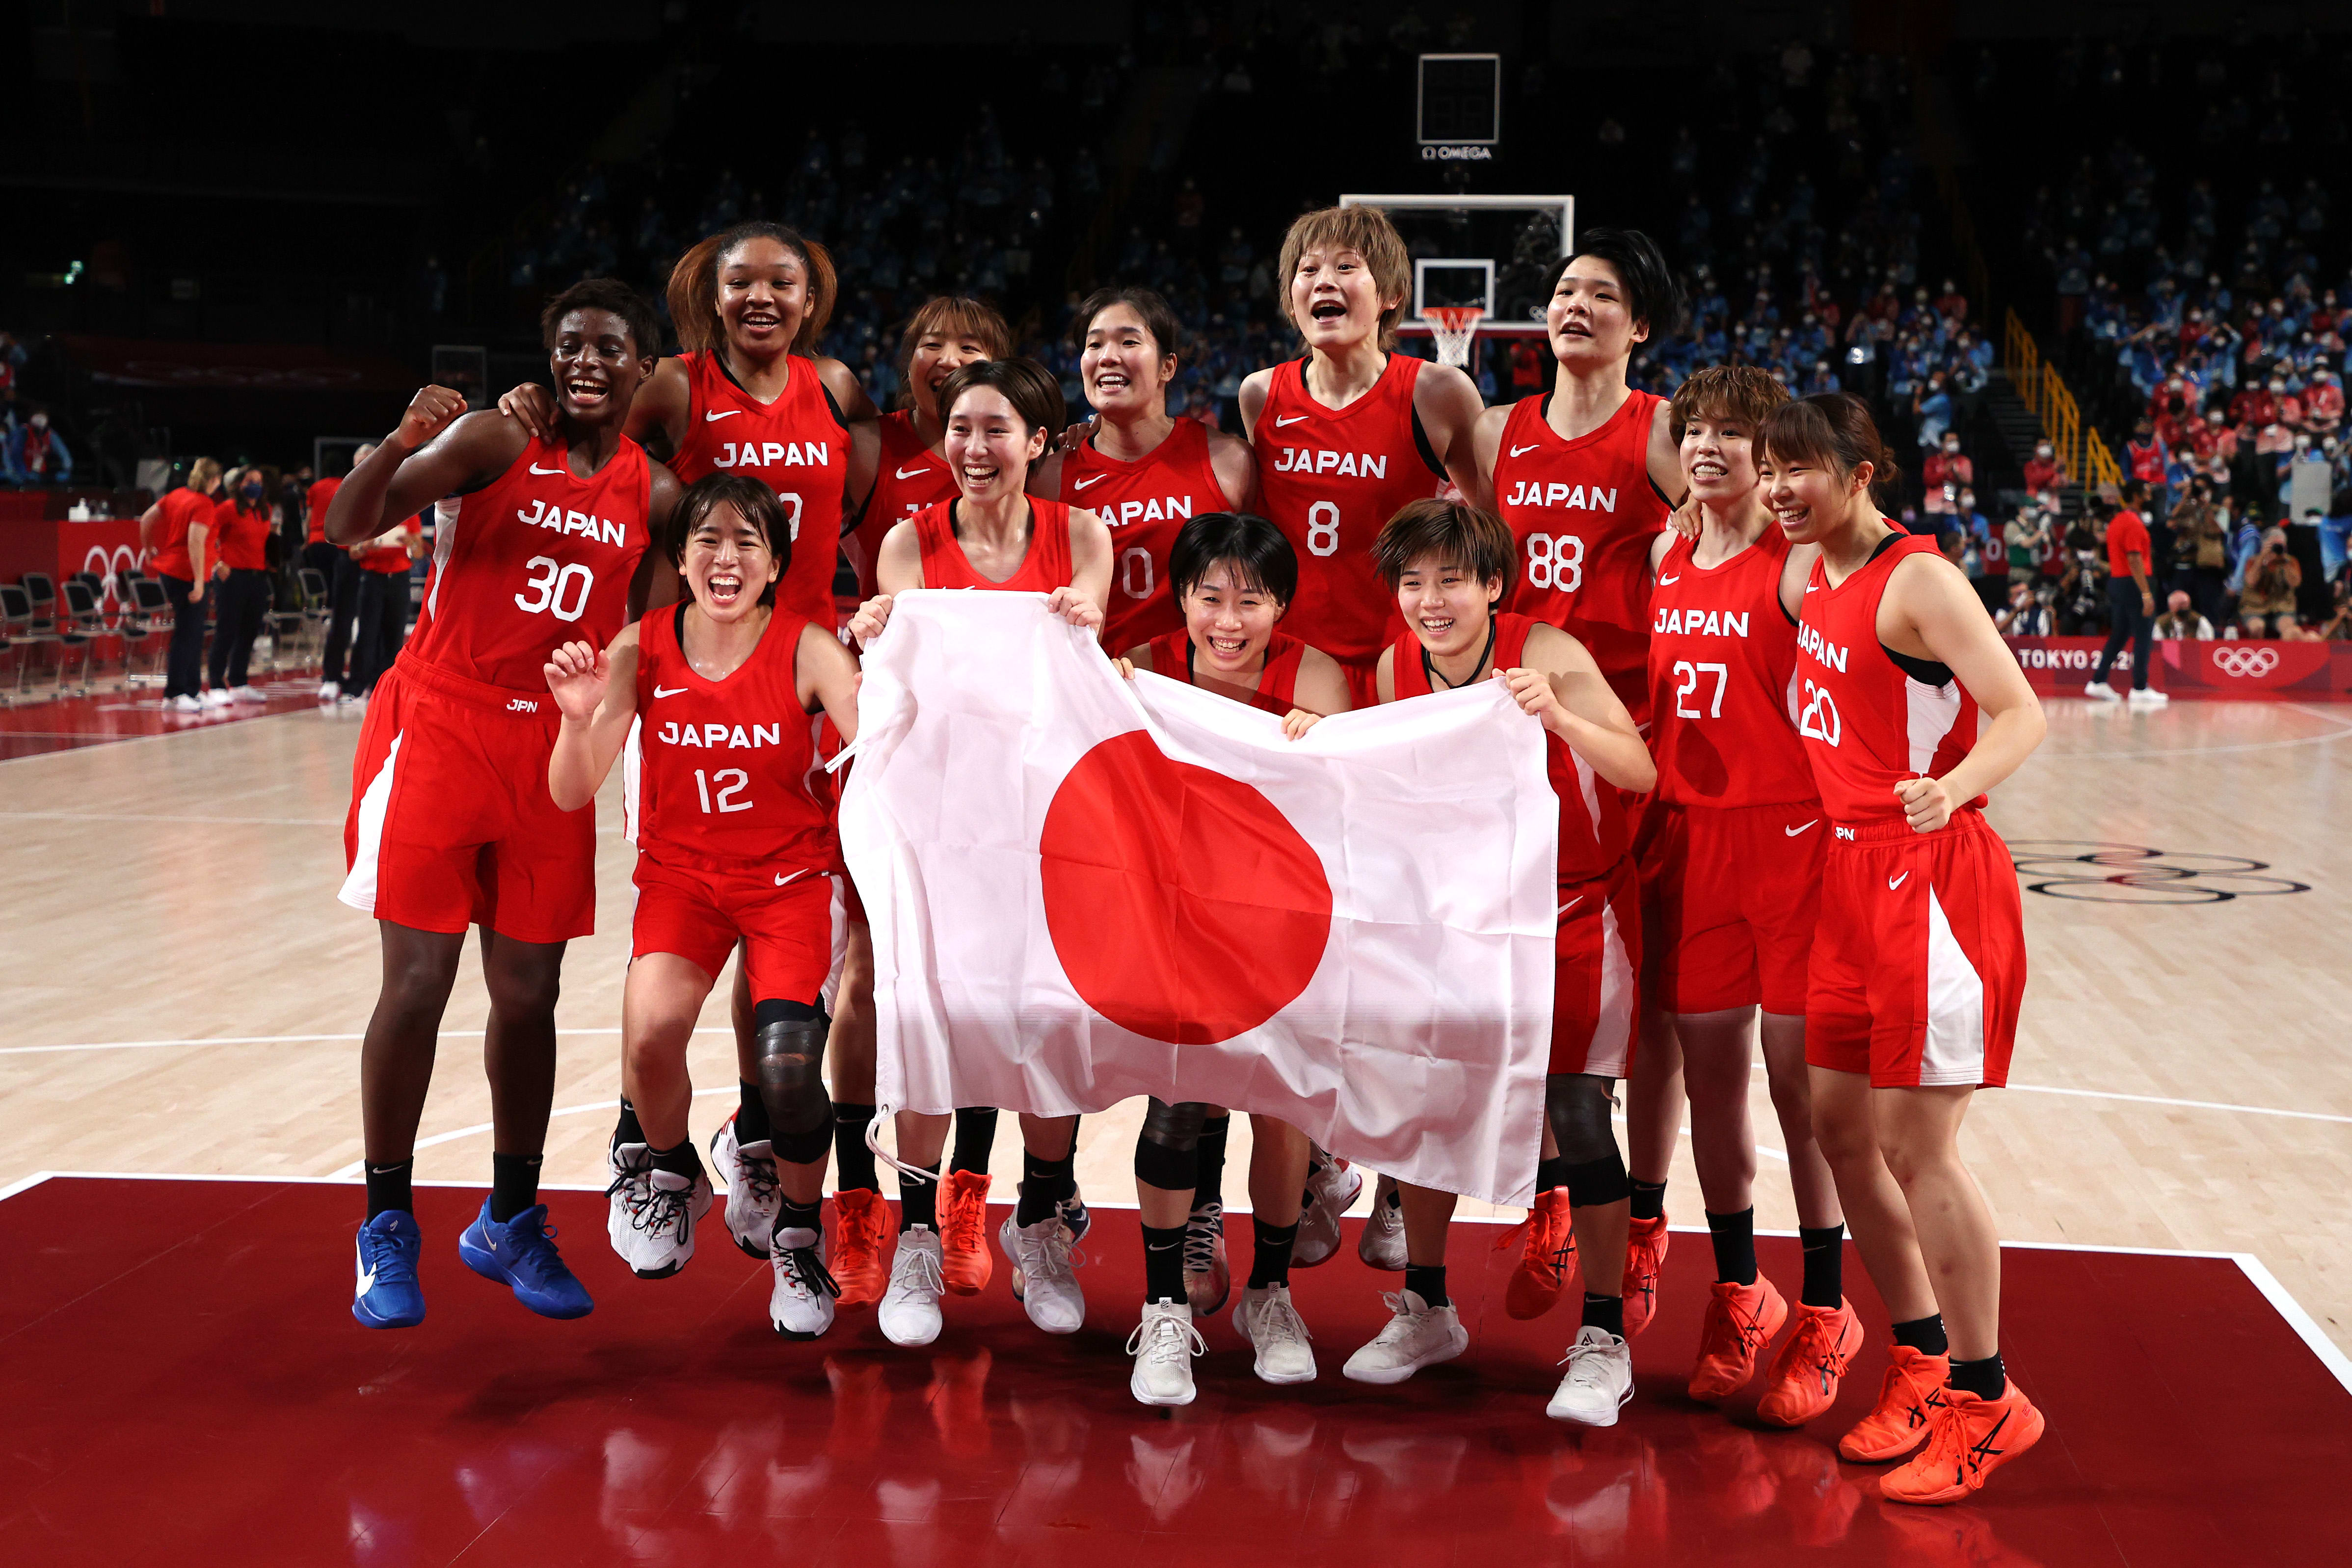 バスケ女子 3ポイント と スピード 日本の強さを世界にアピールできた 原田裕花さんに聞く